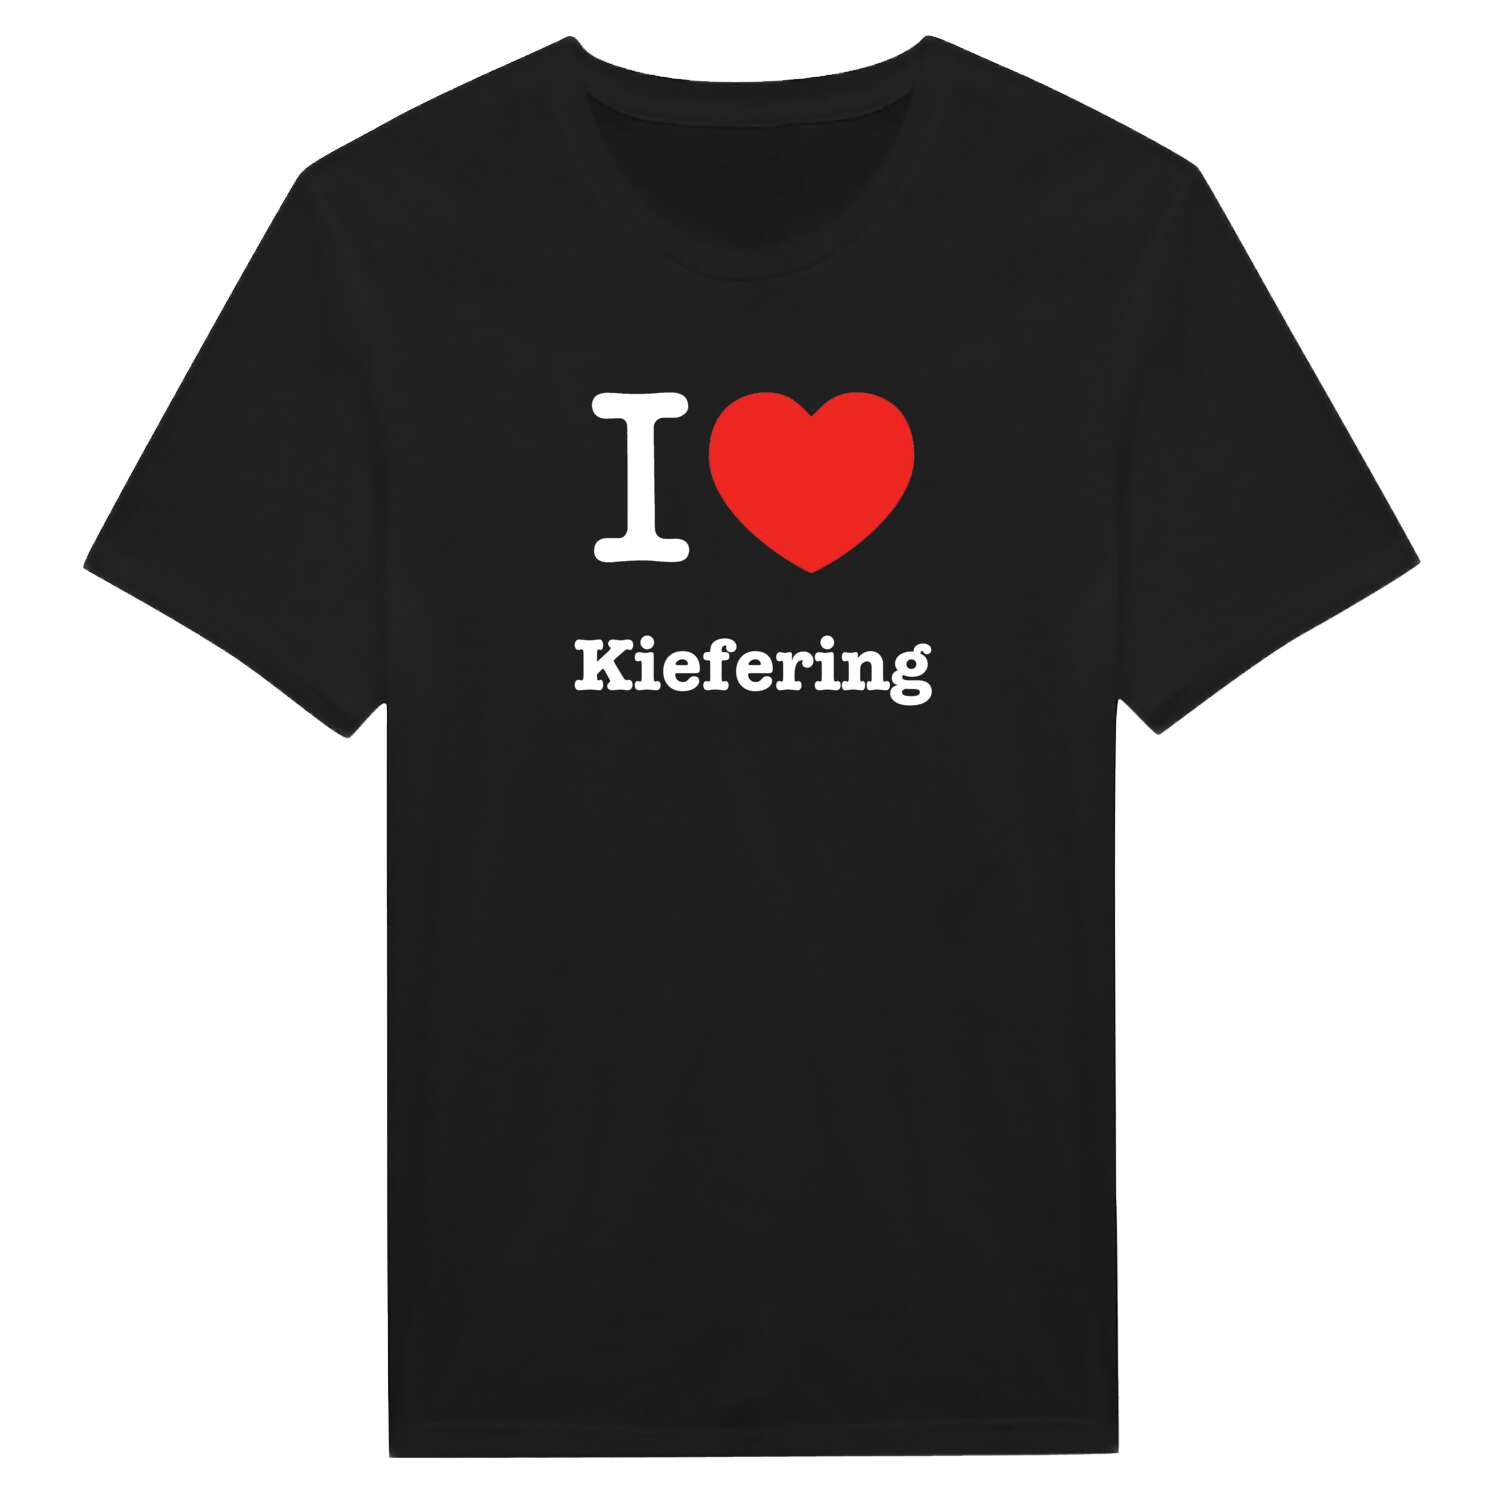 Kiefering T-Shirt »I love«